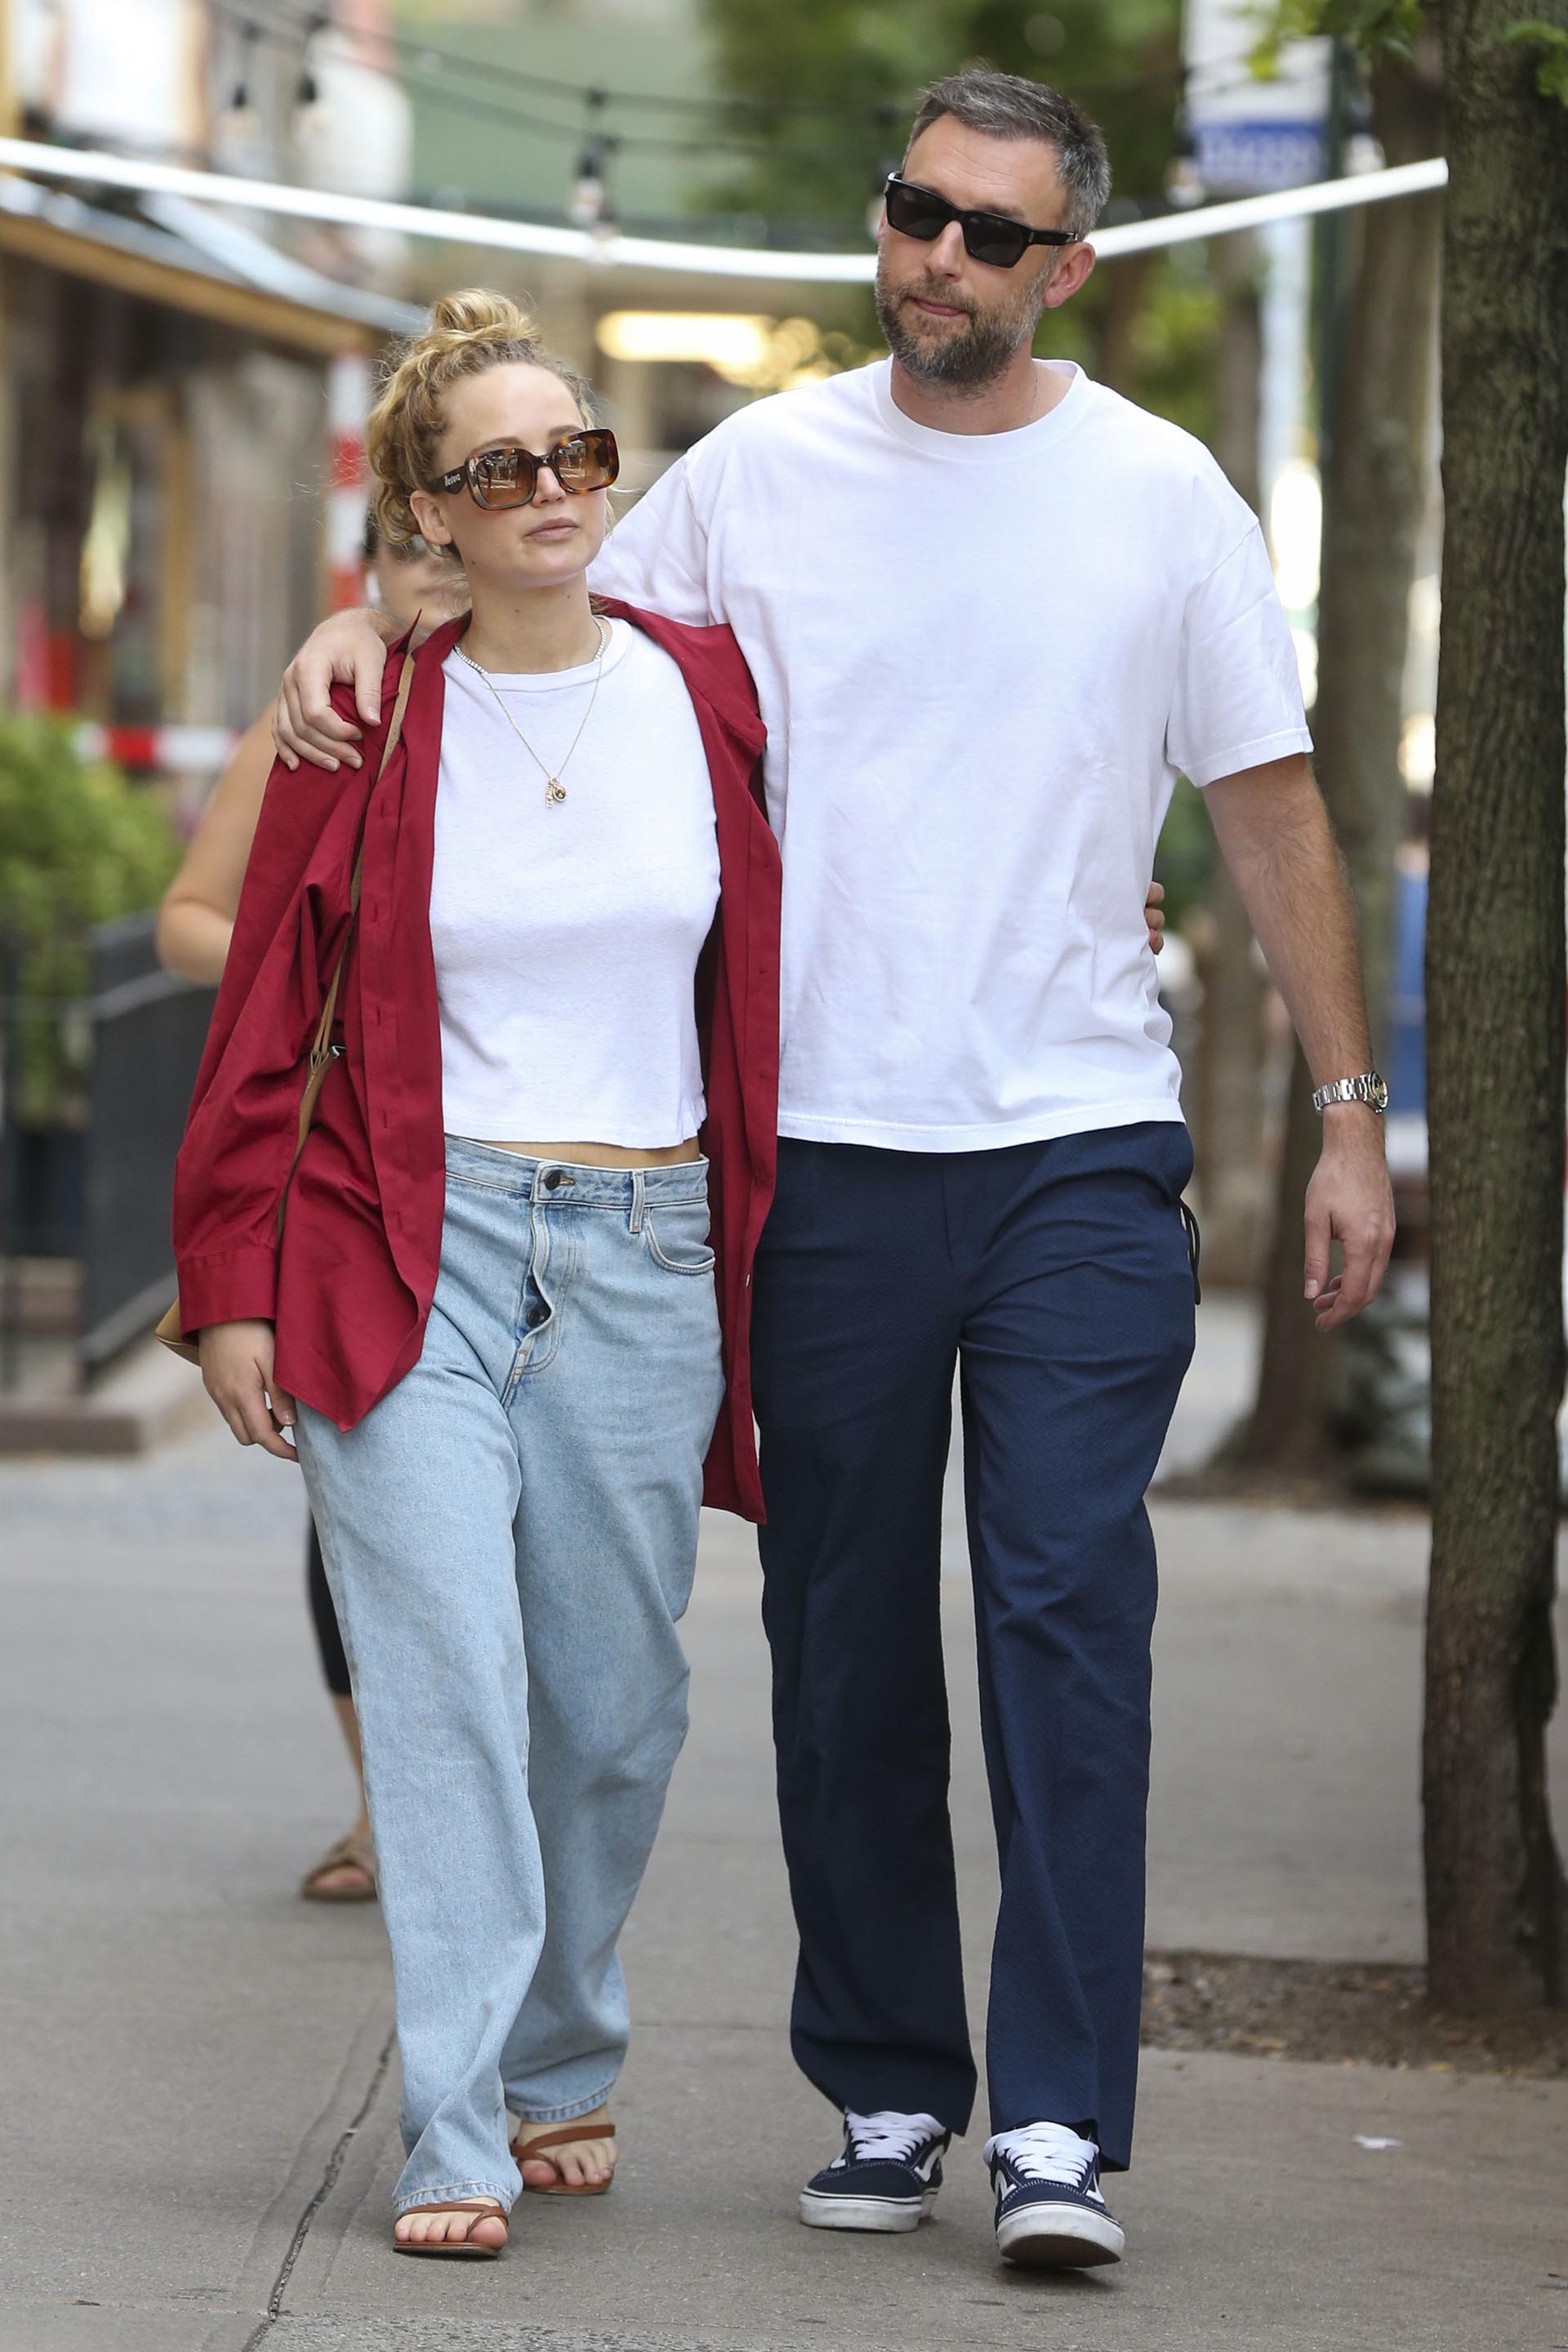 Romántico paseo. Jennifer Lawrence y Cooke Maroney caminaron abrazados por las calles de Nueva York. Ella lució un jean clarito, con una remera clásica blanca y una camisa roja, mientras que él optó por un pantalón de vestir color azul y una remera blanca. Ambos llevaron lentes de sol